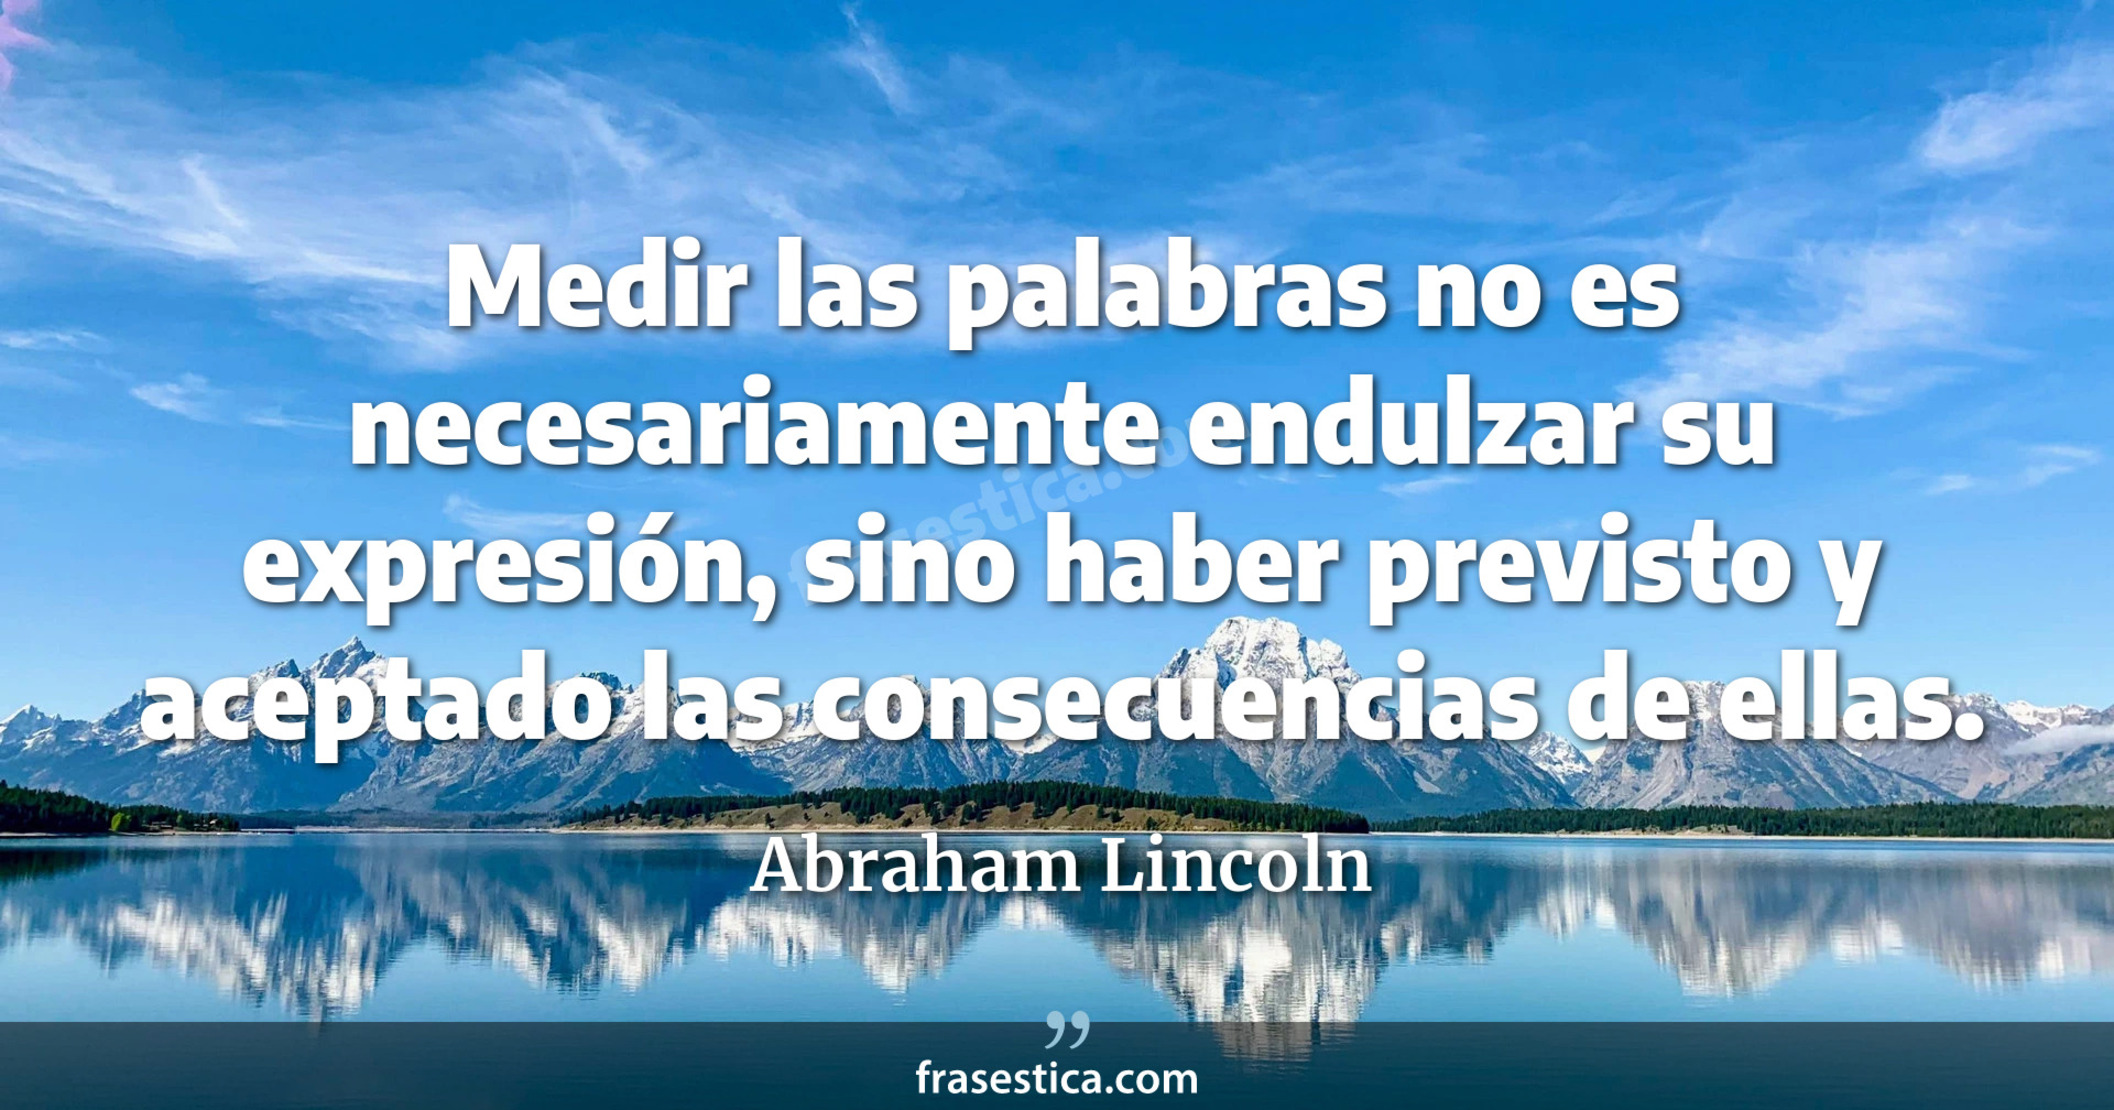 Medir las palabras no es necesariamente endulzar su expresión, sino haber previsto y aceptado las consecuencias de ellas. - Abraham Lincoln